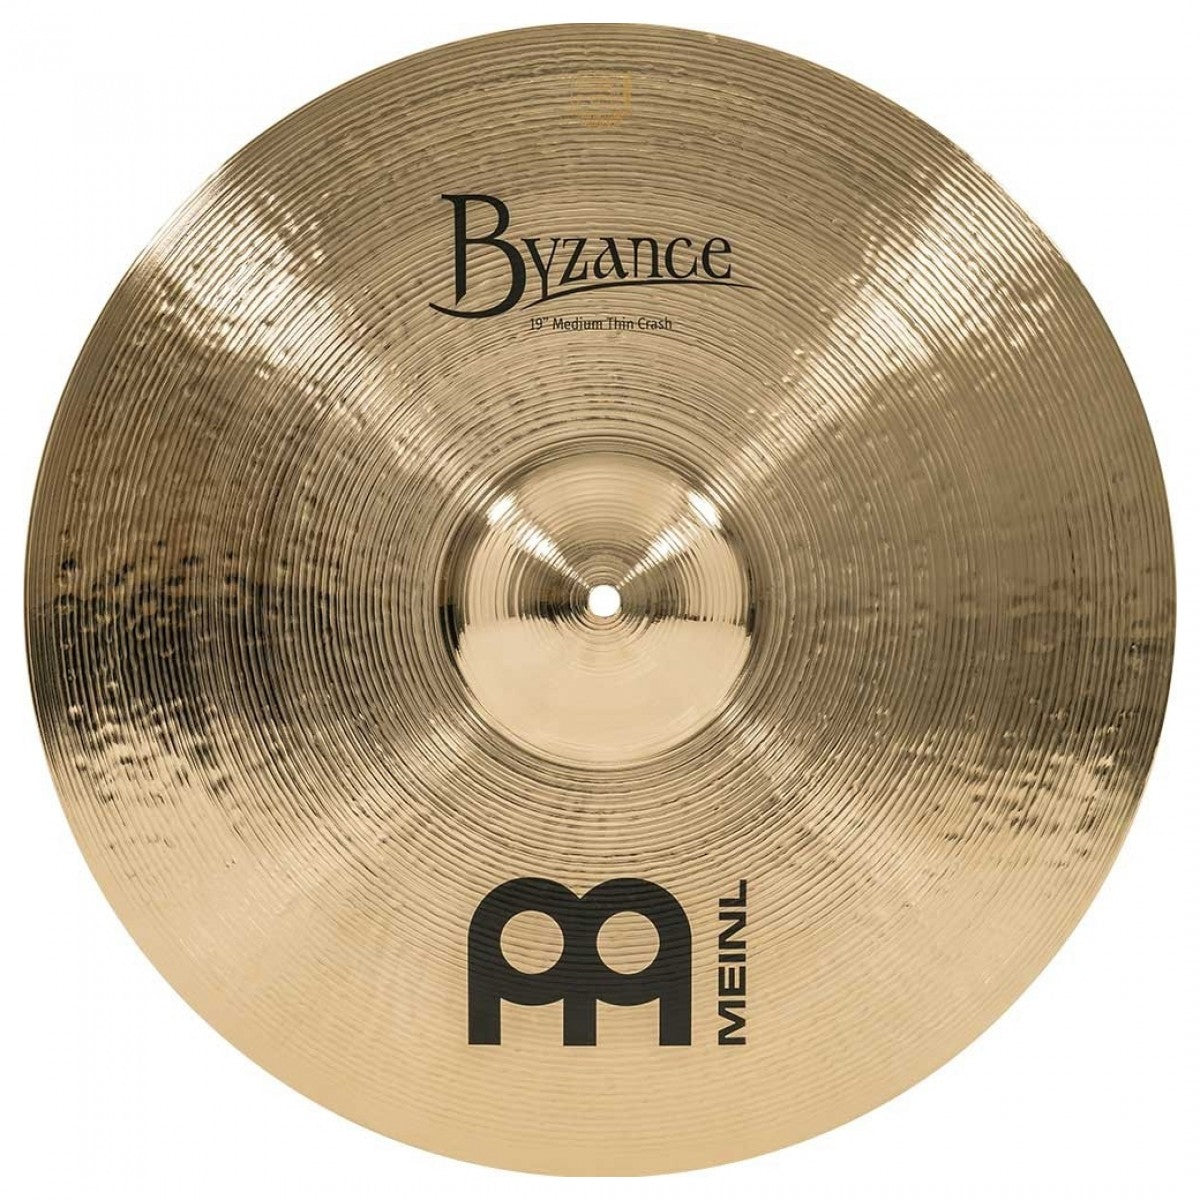 Cymbal Meinl Byzance Brilliant 19" Medium Thin Crash - B19MTC-B - Việt Music